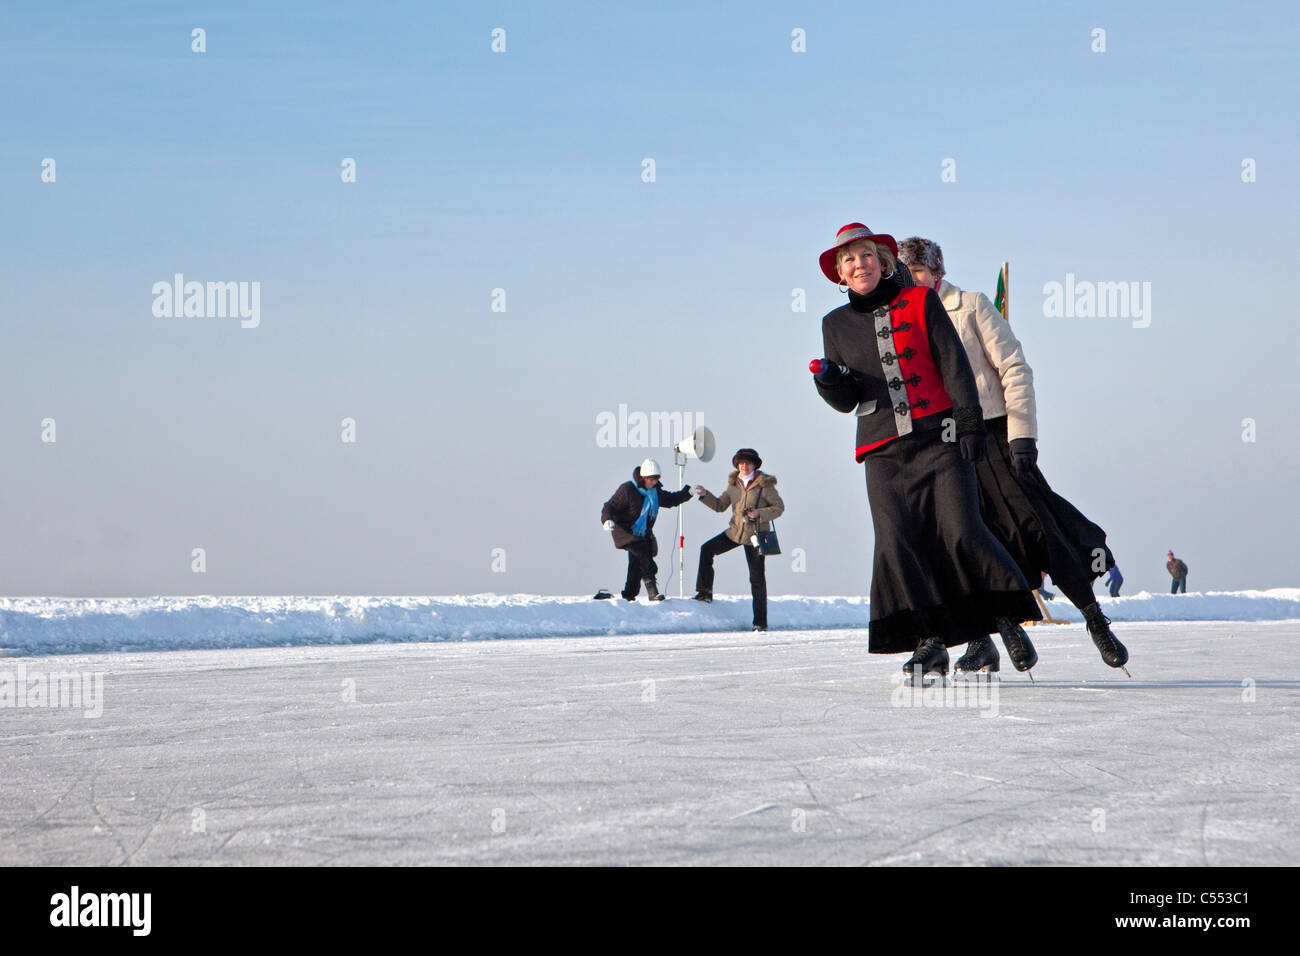 Les Pays-Bas, Hindeloopen, capitale de la culture néerlandaise de patinage. Patinage artistique (ou voile) sur le lac appelé IJsselmeer. Banque D'Images